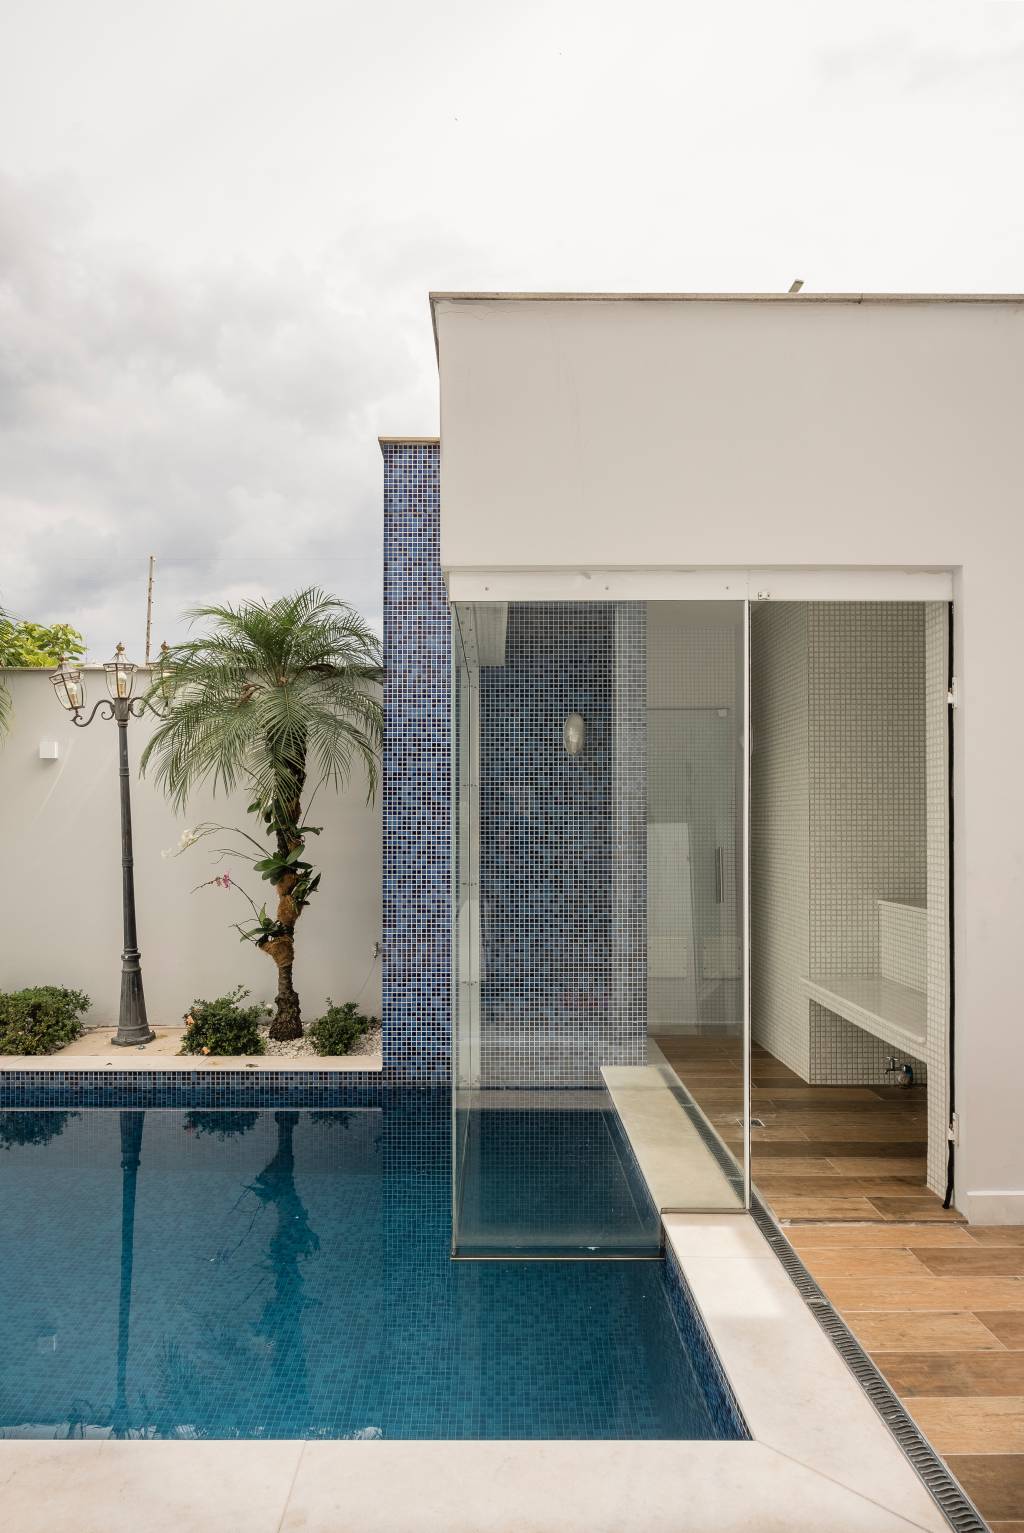 Parte da piscina da casa do músico Marcos, de Marcos & Belutti. Ao fundo, plantas e muro branco aparecem na foto.